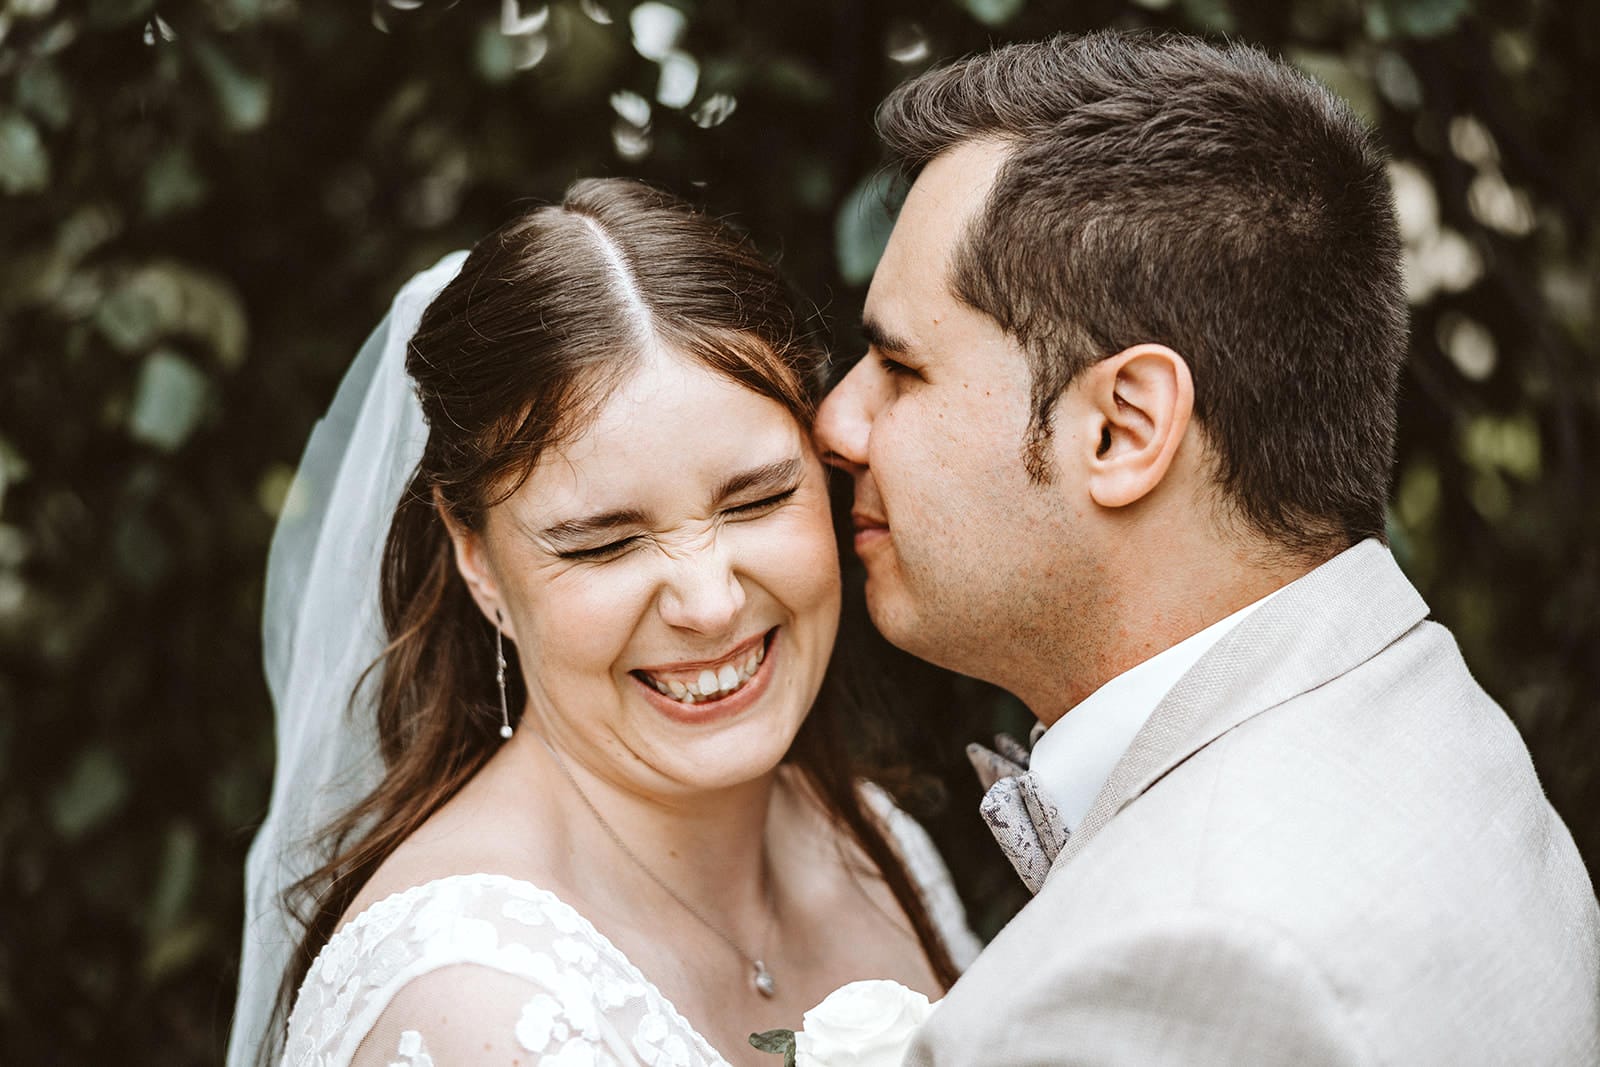 St. Marien Witten Hochzeitsfotograf - Bräutigam küsst Braut an Wange